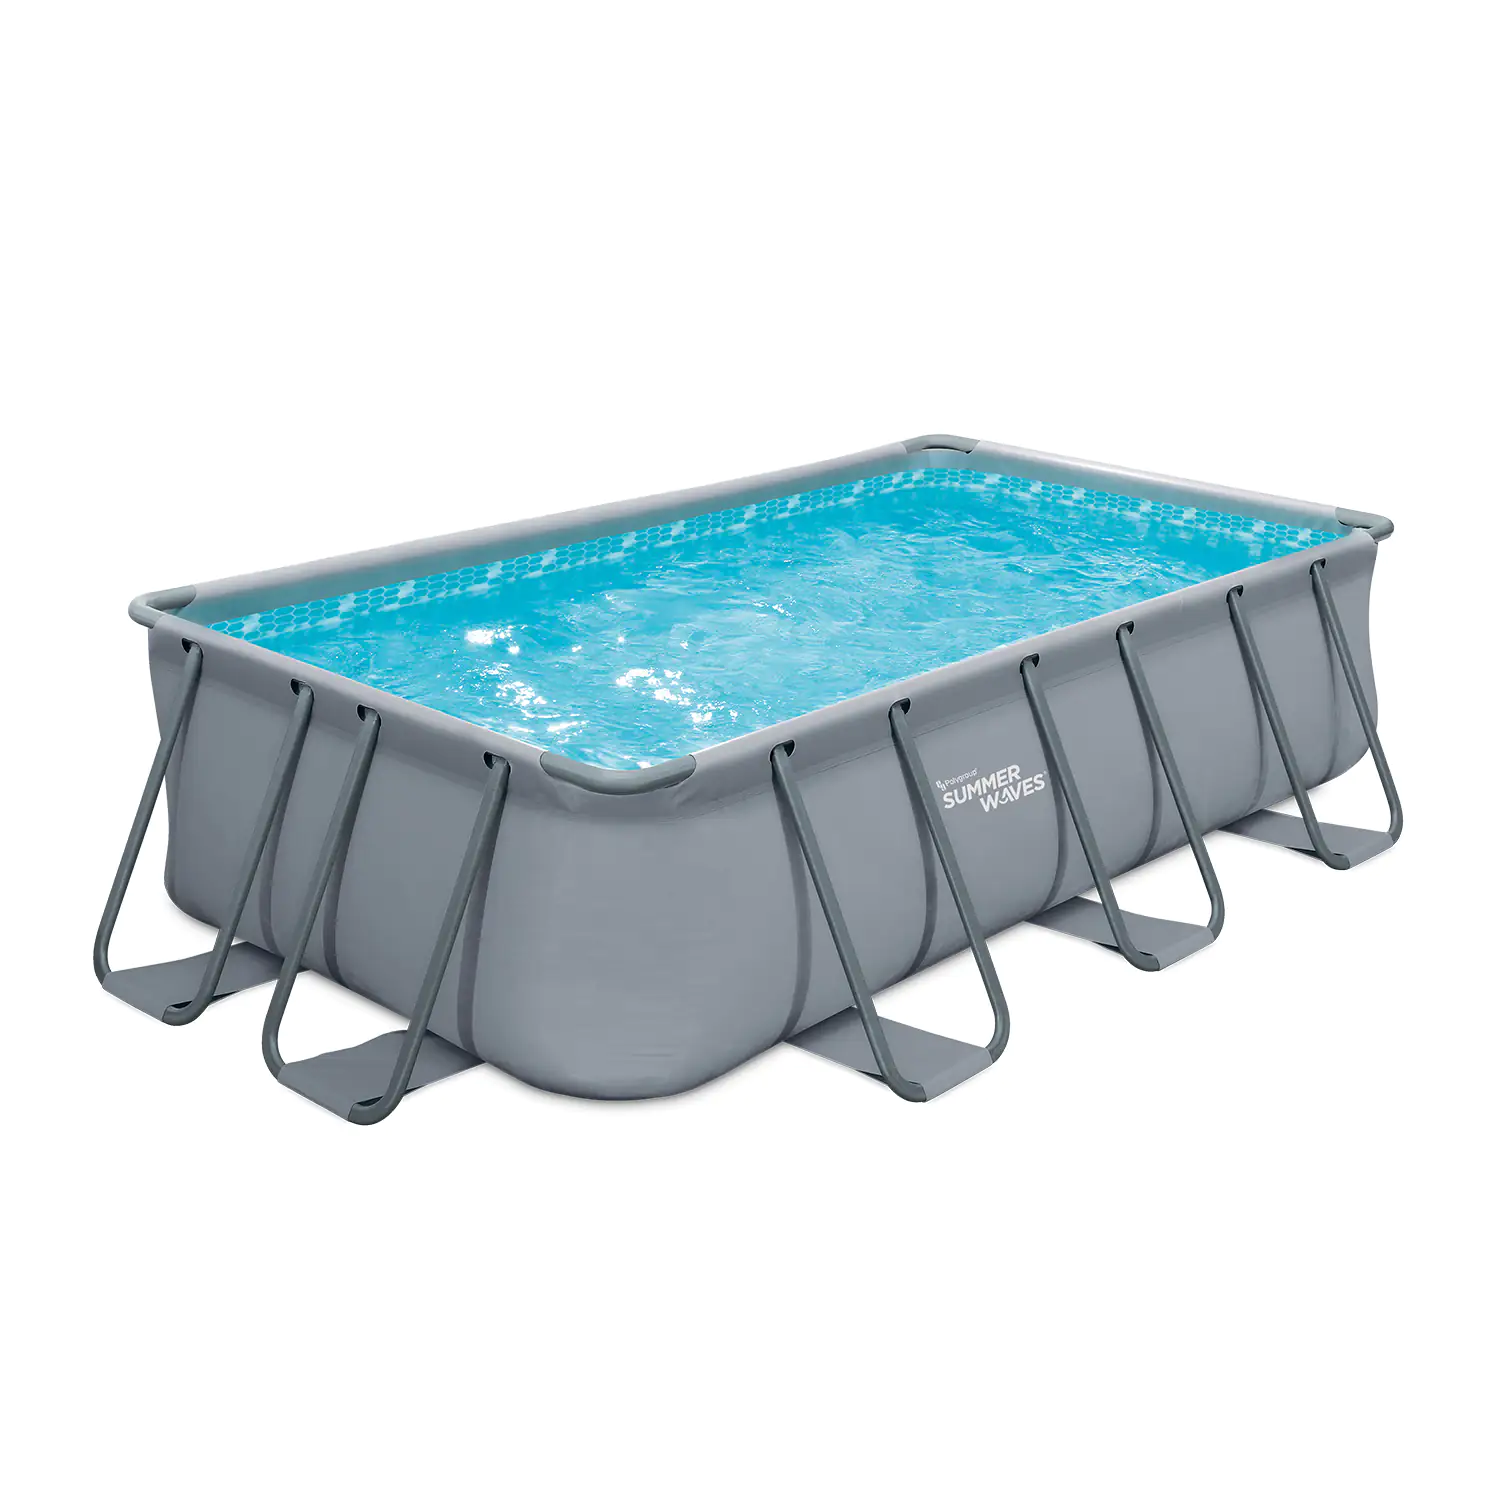 Summer Waves Pool Elite Frame Rectangular 4 m x 2 m x 1 m kaufen | Globus  Baumarkt